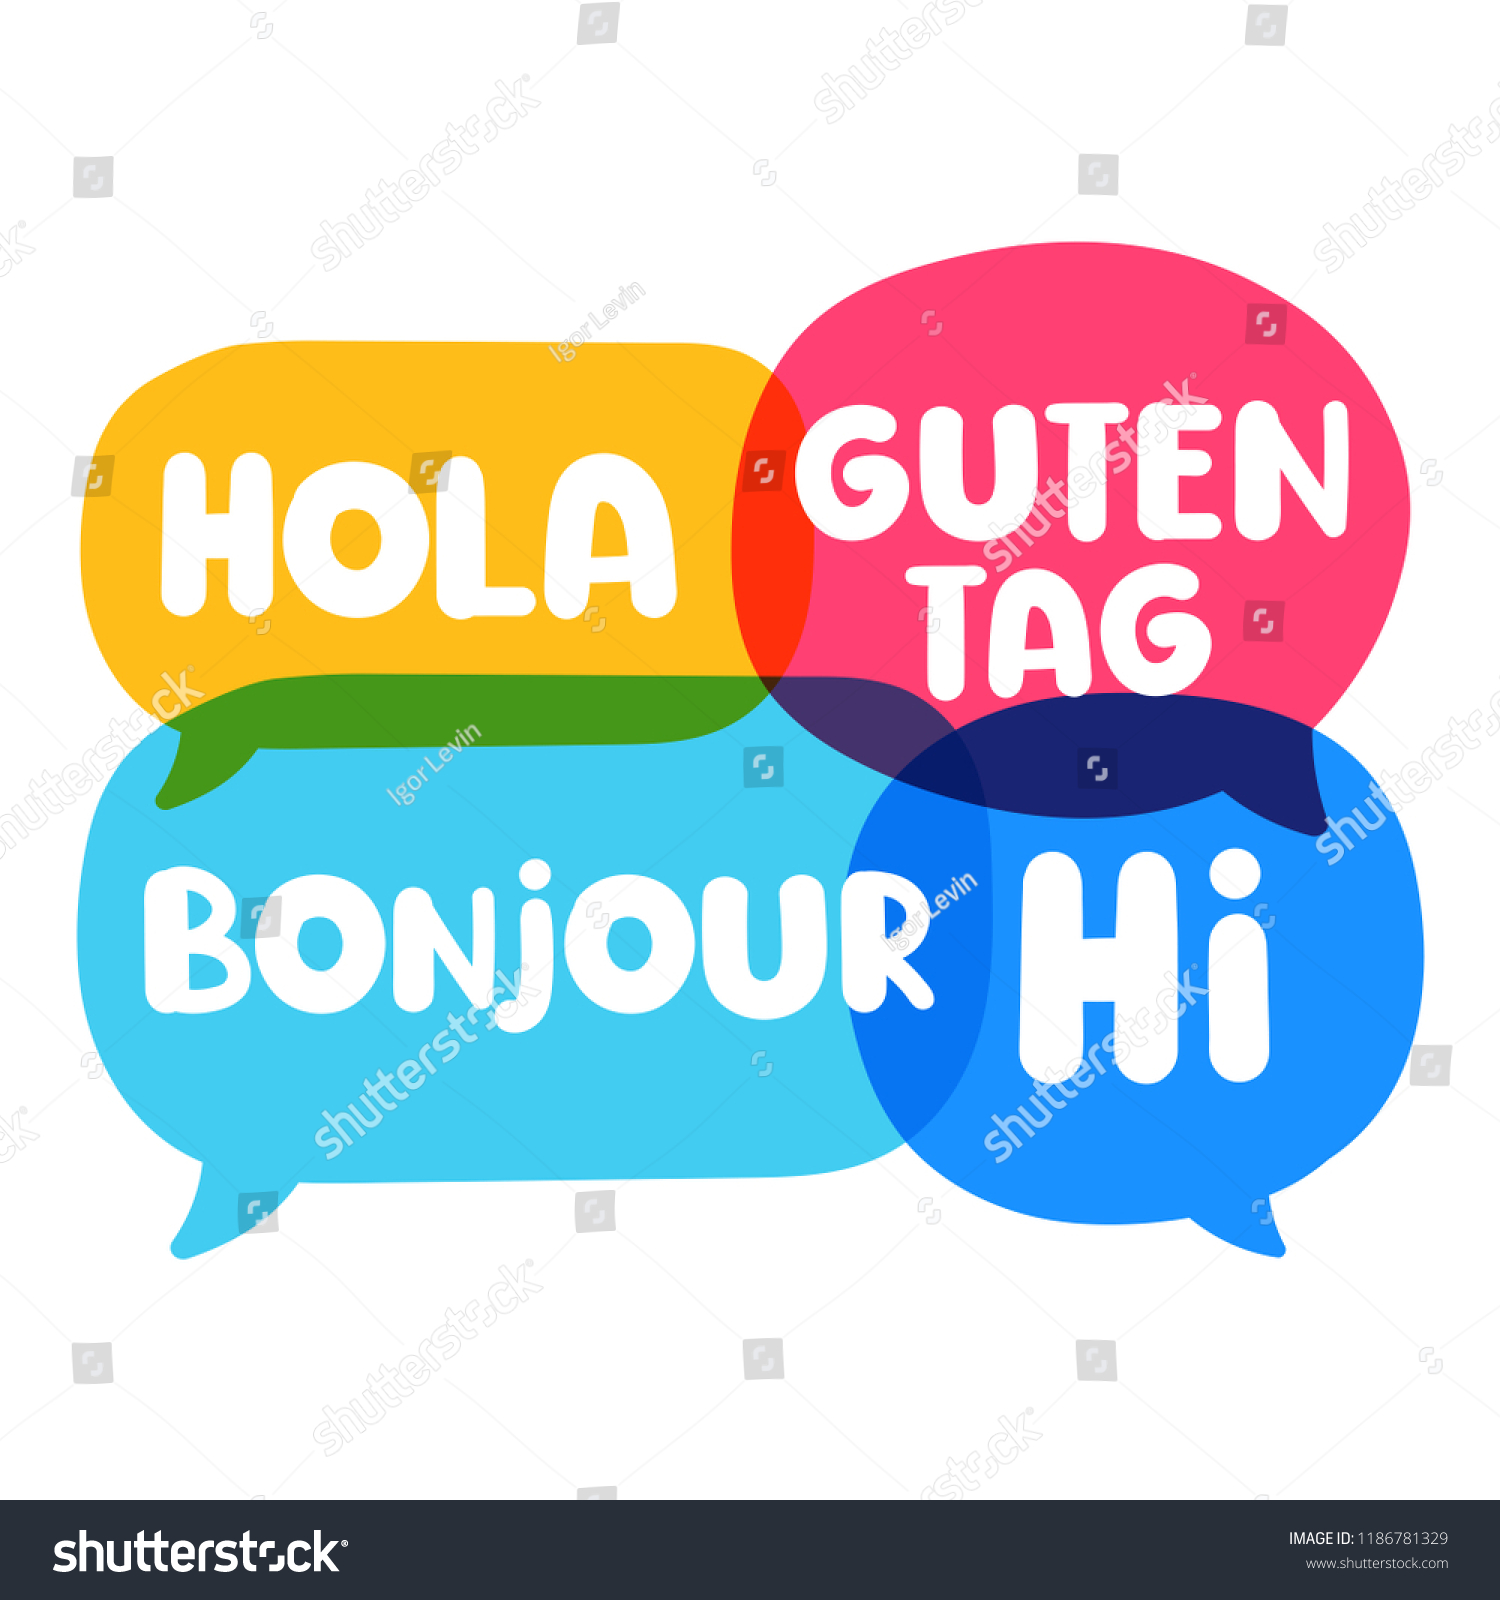 Hola Guten Tag Bonjour Hi Speech: стоковая векторная графика (без лицензион...